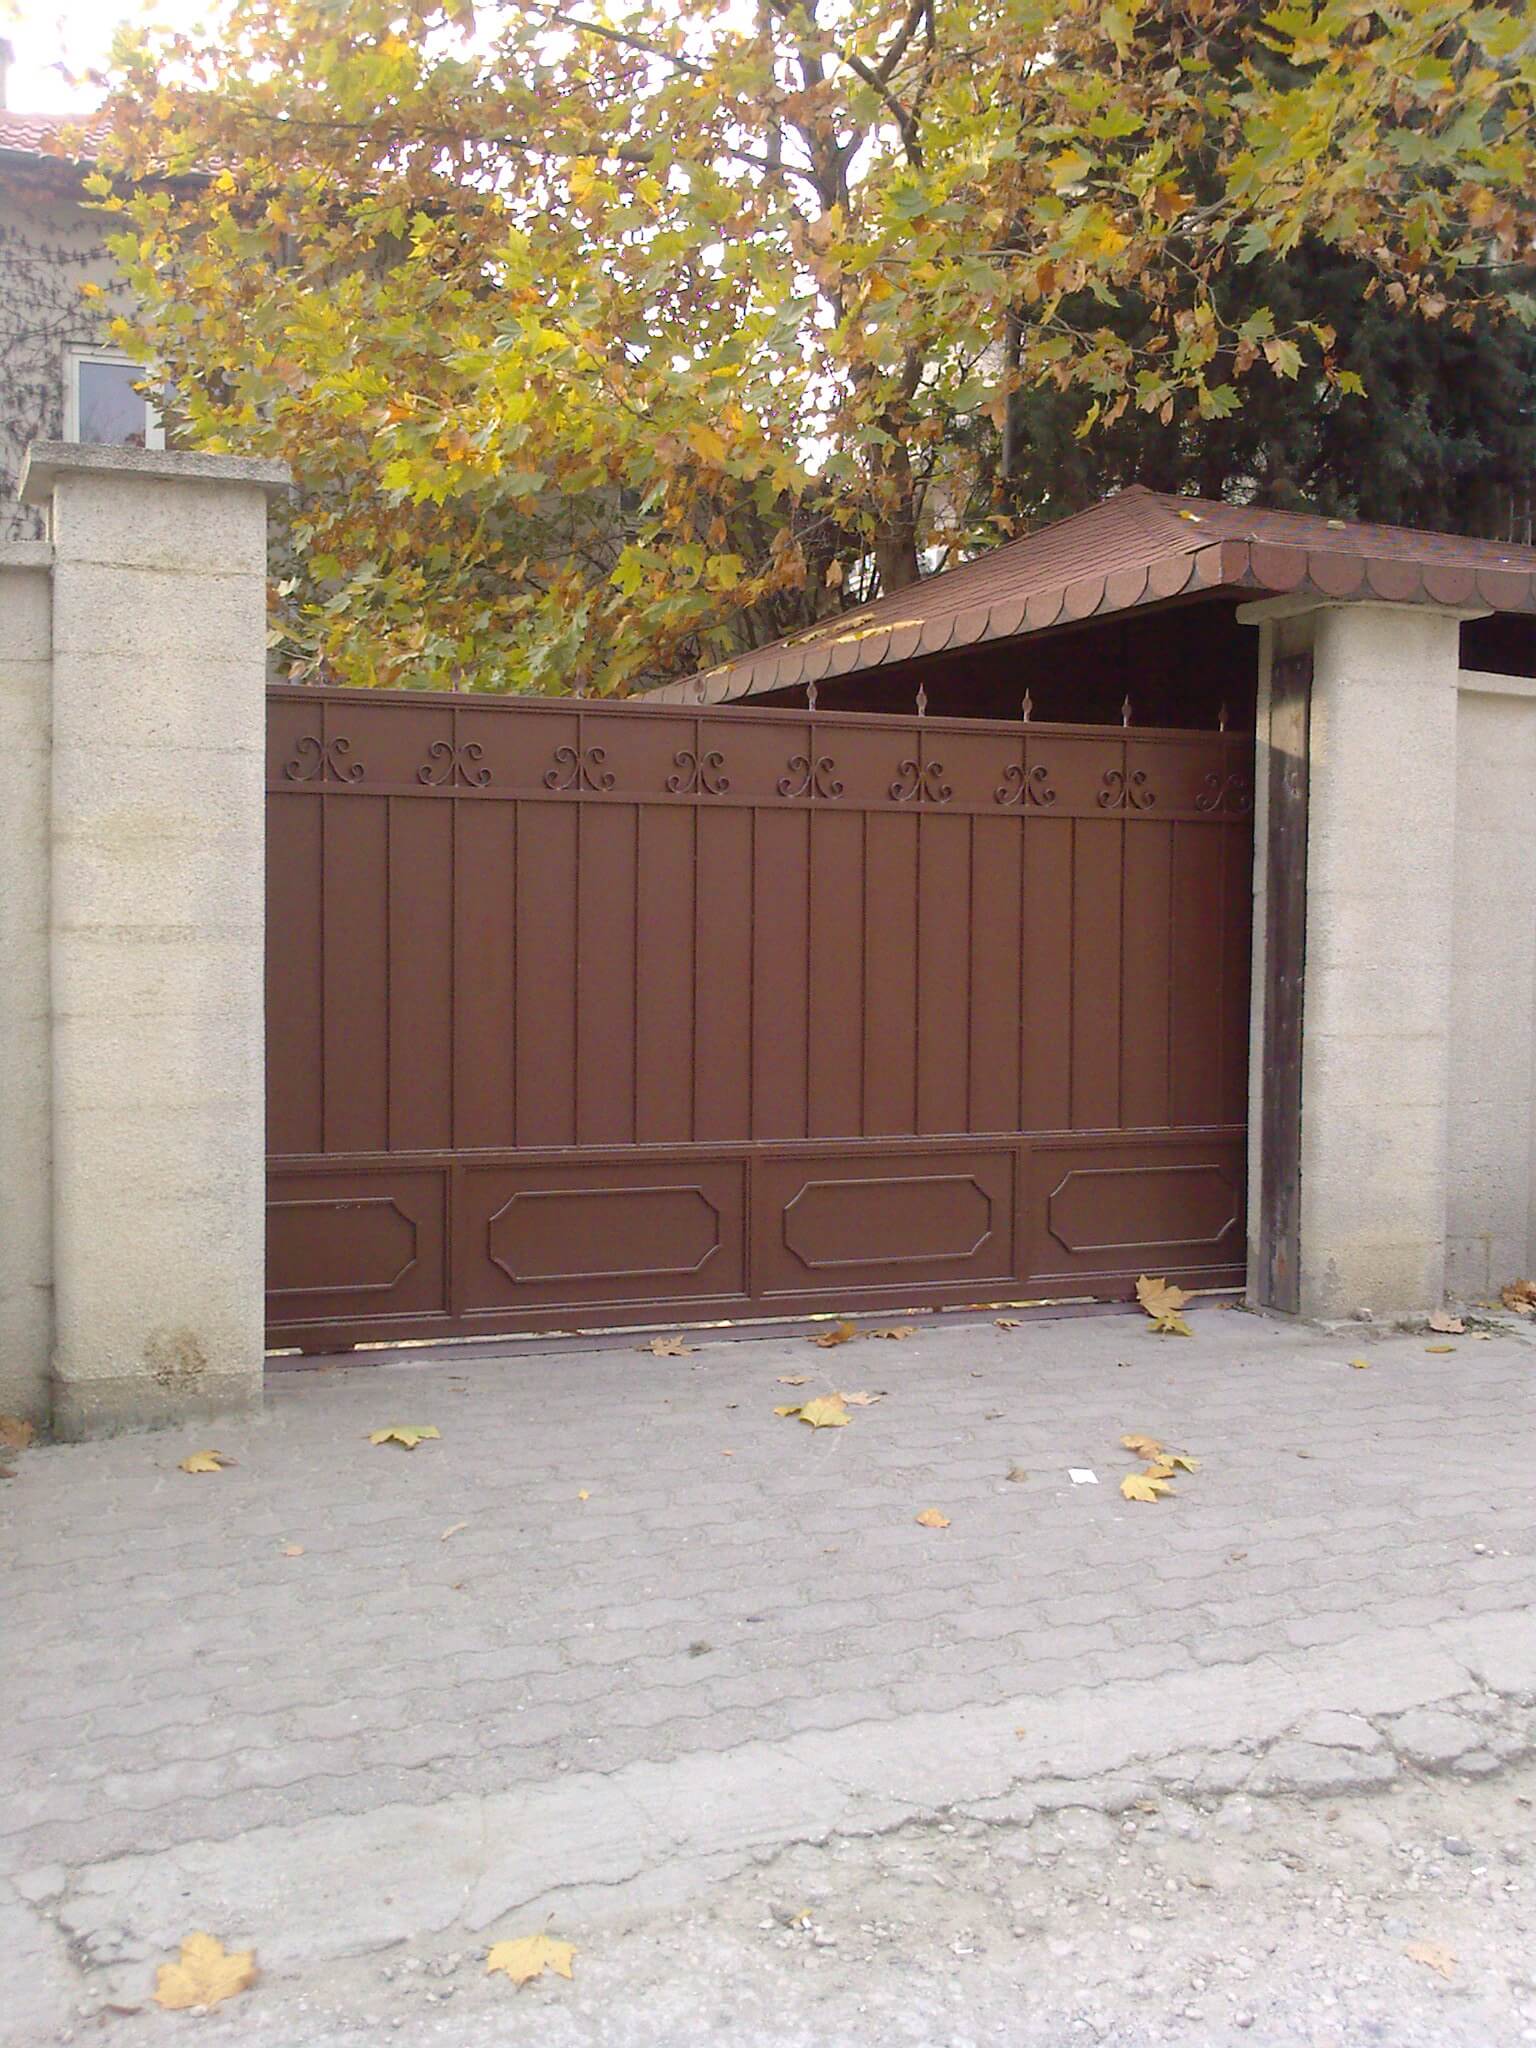 Метални врати за Дворове или портални врати